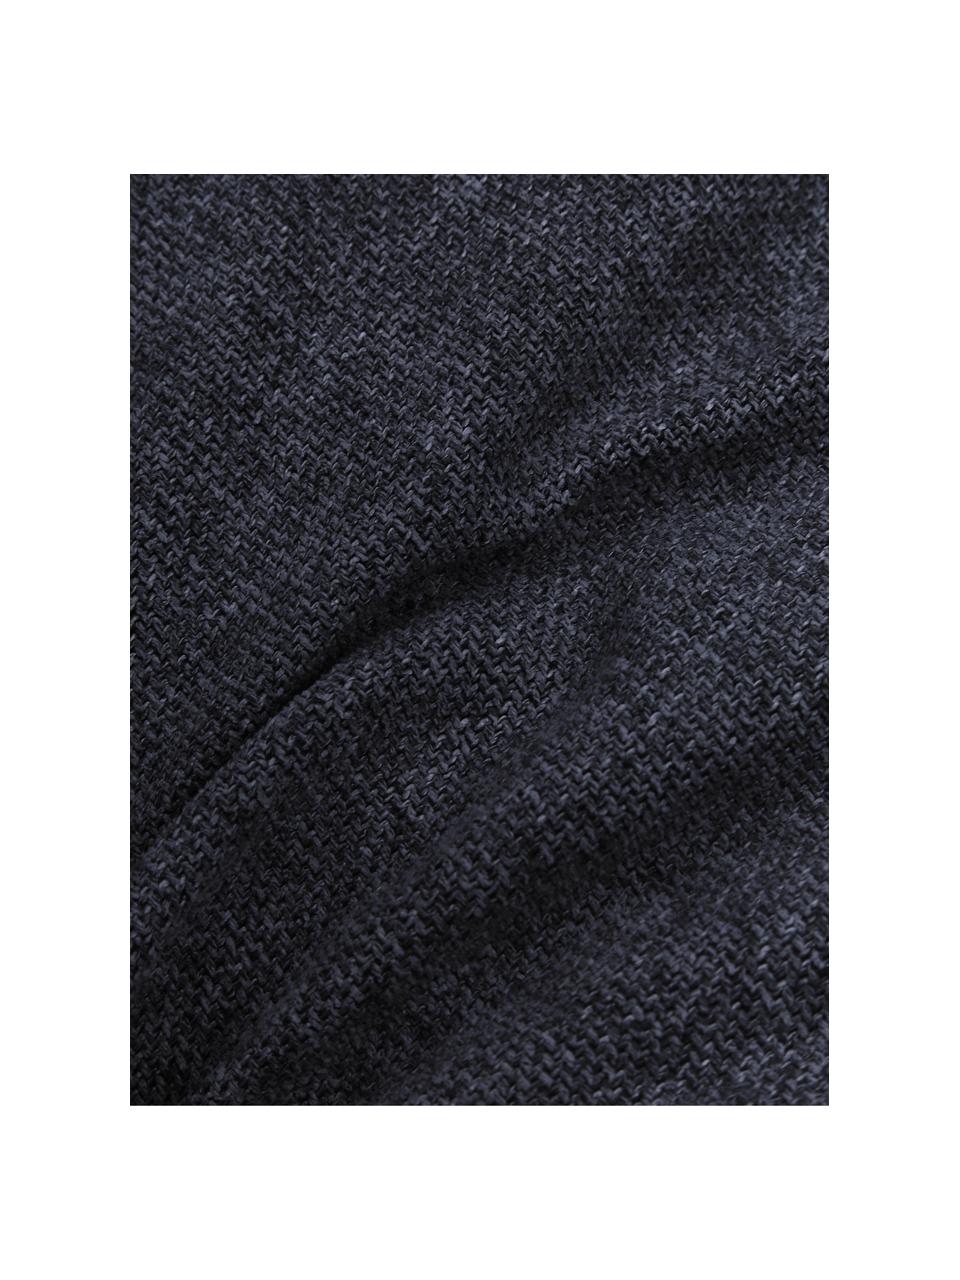 Polštář na pohovku Lennon, Tmavě modrá, Š 60 cm, D 60 cm